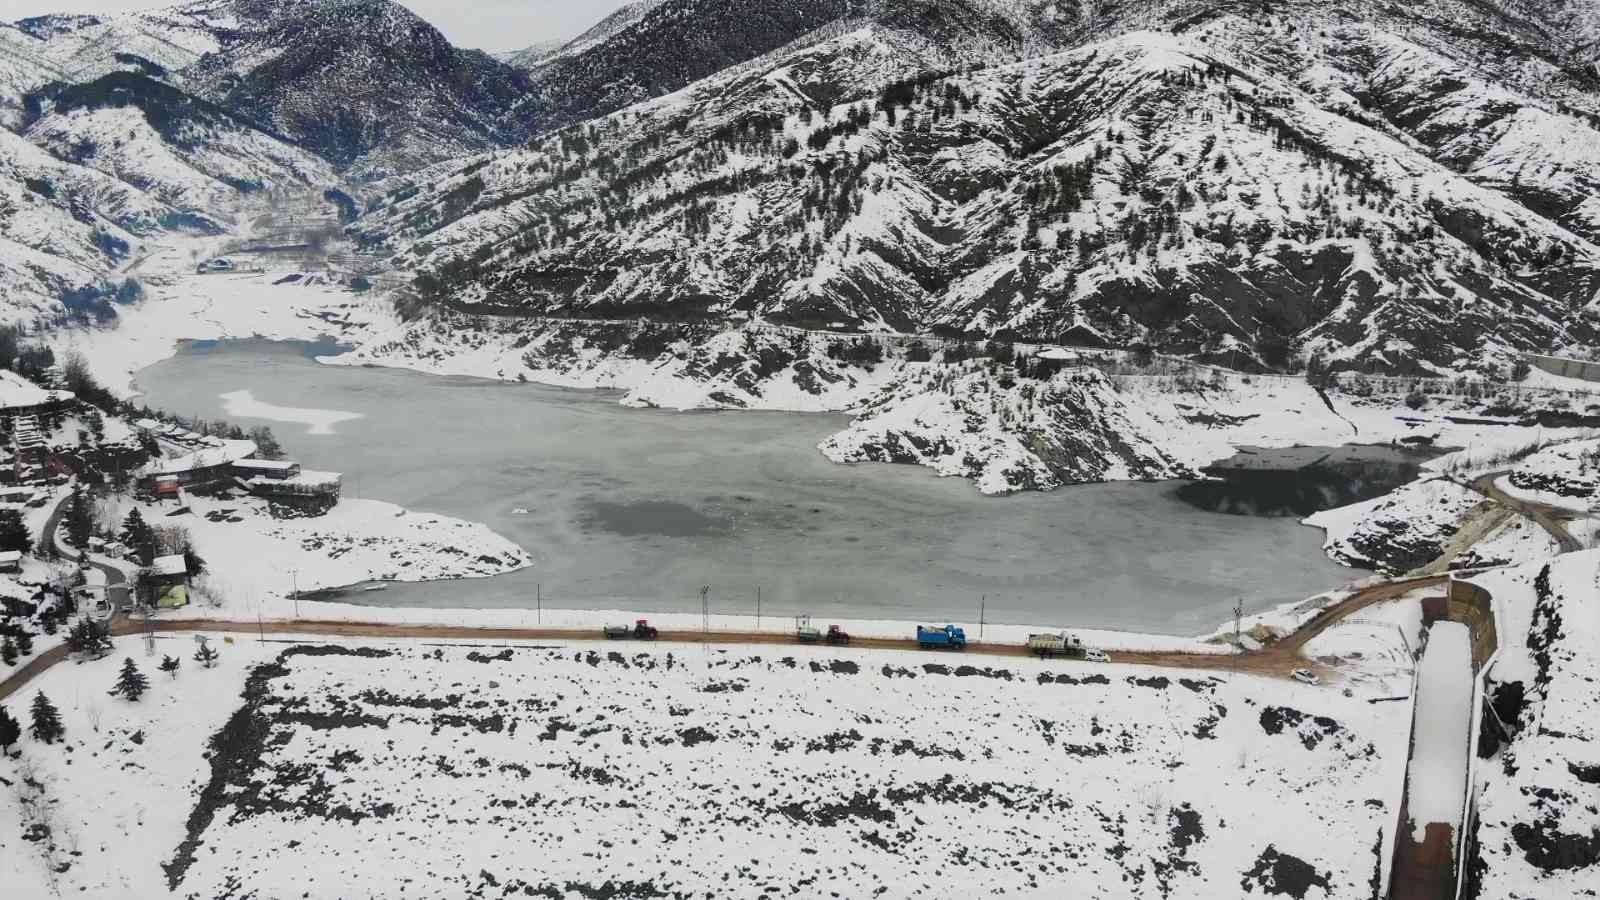 Sokaklardaki karları toplayıp baraj gölüne taşıdılar #amasya